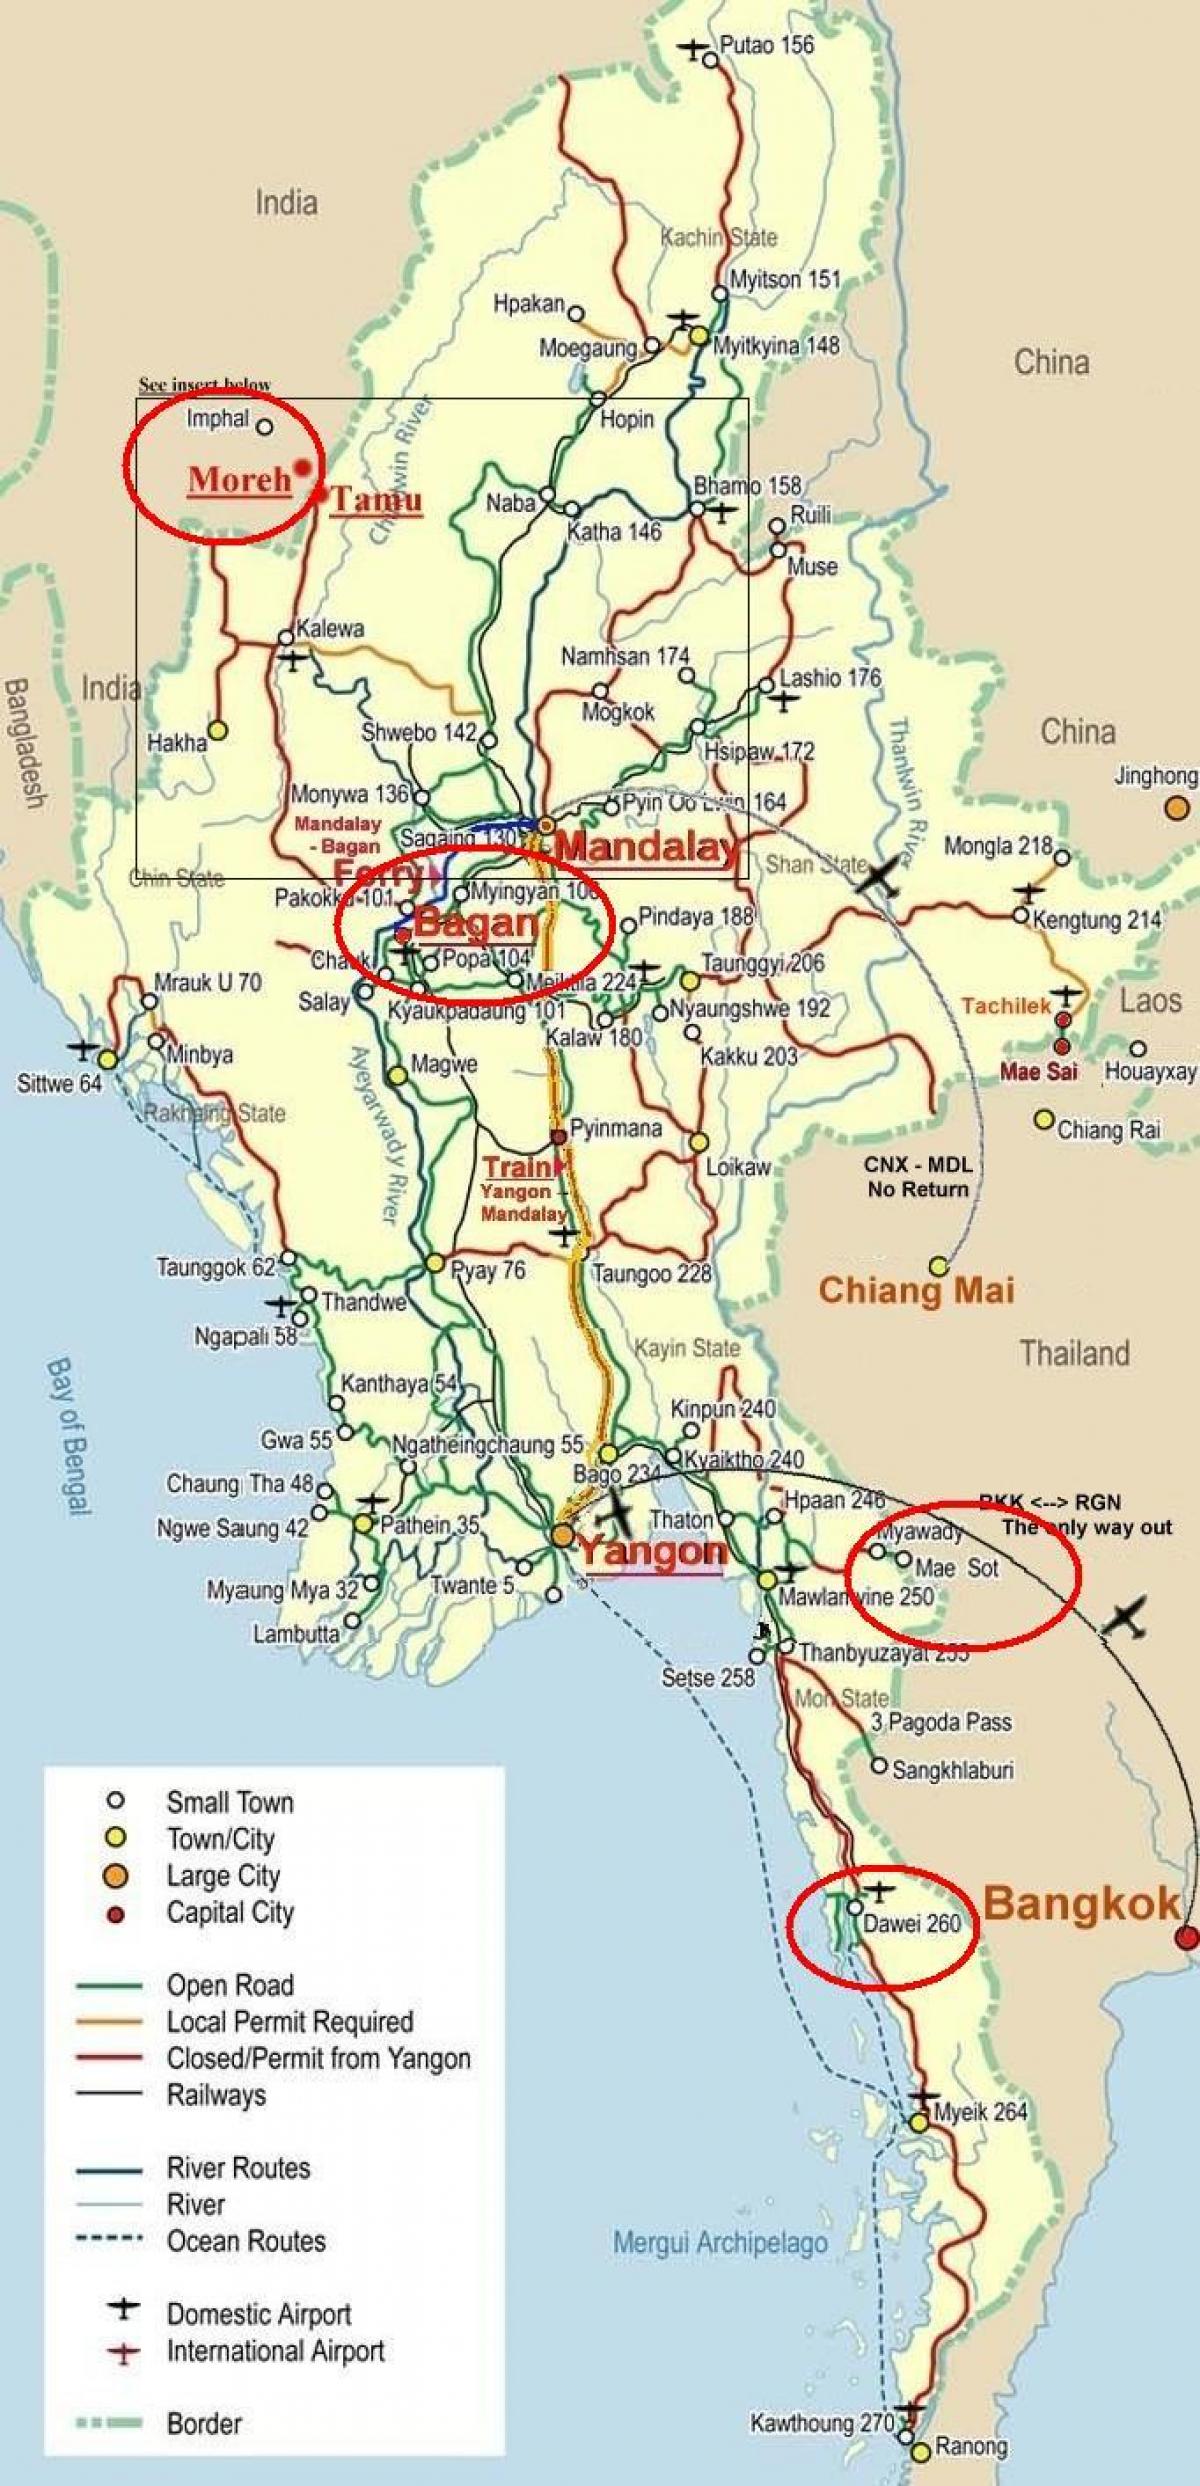 बैंकॉक के नक्शे राजमार्ग